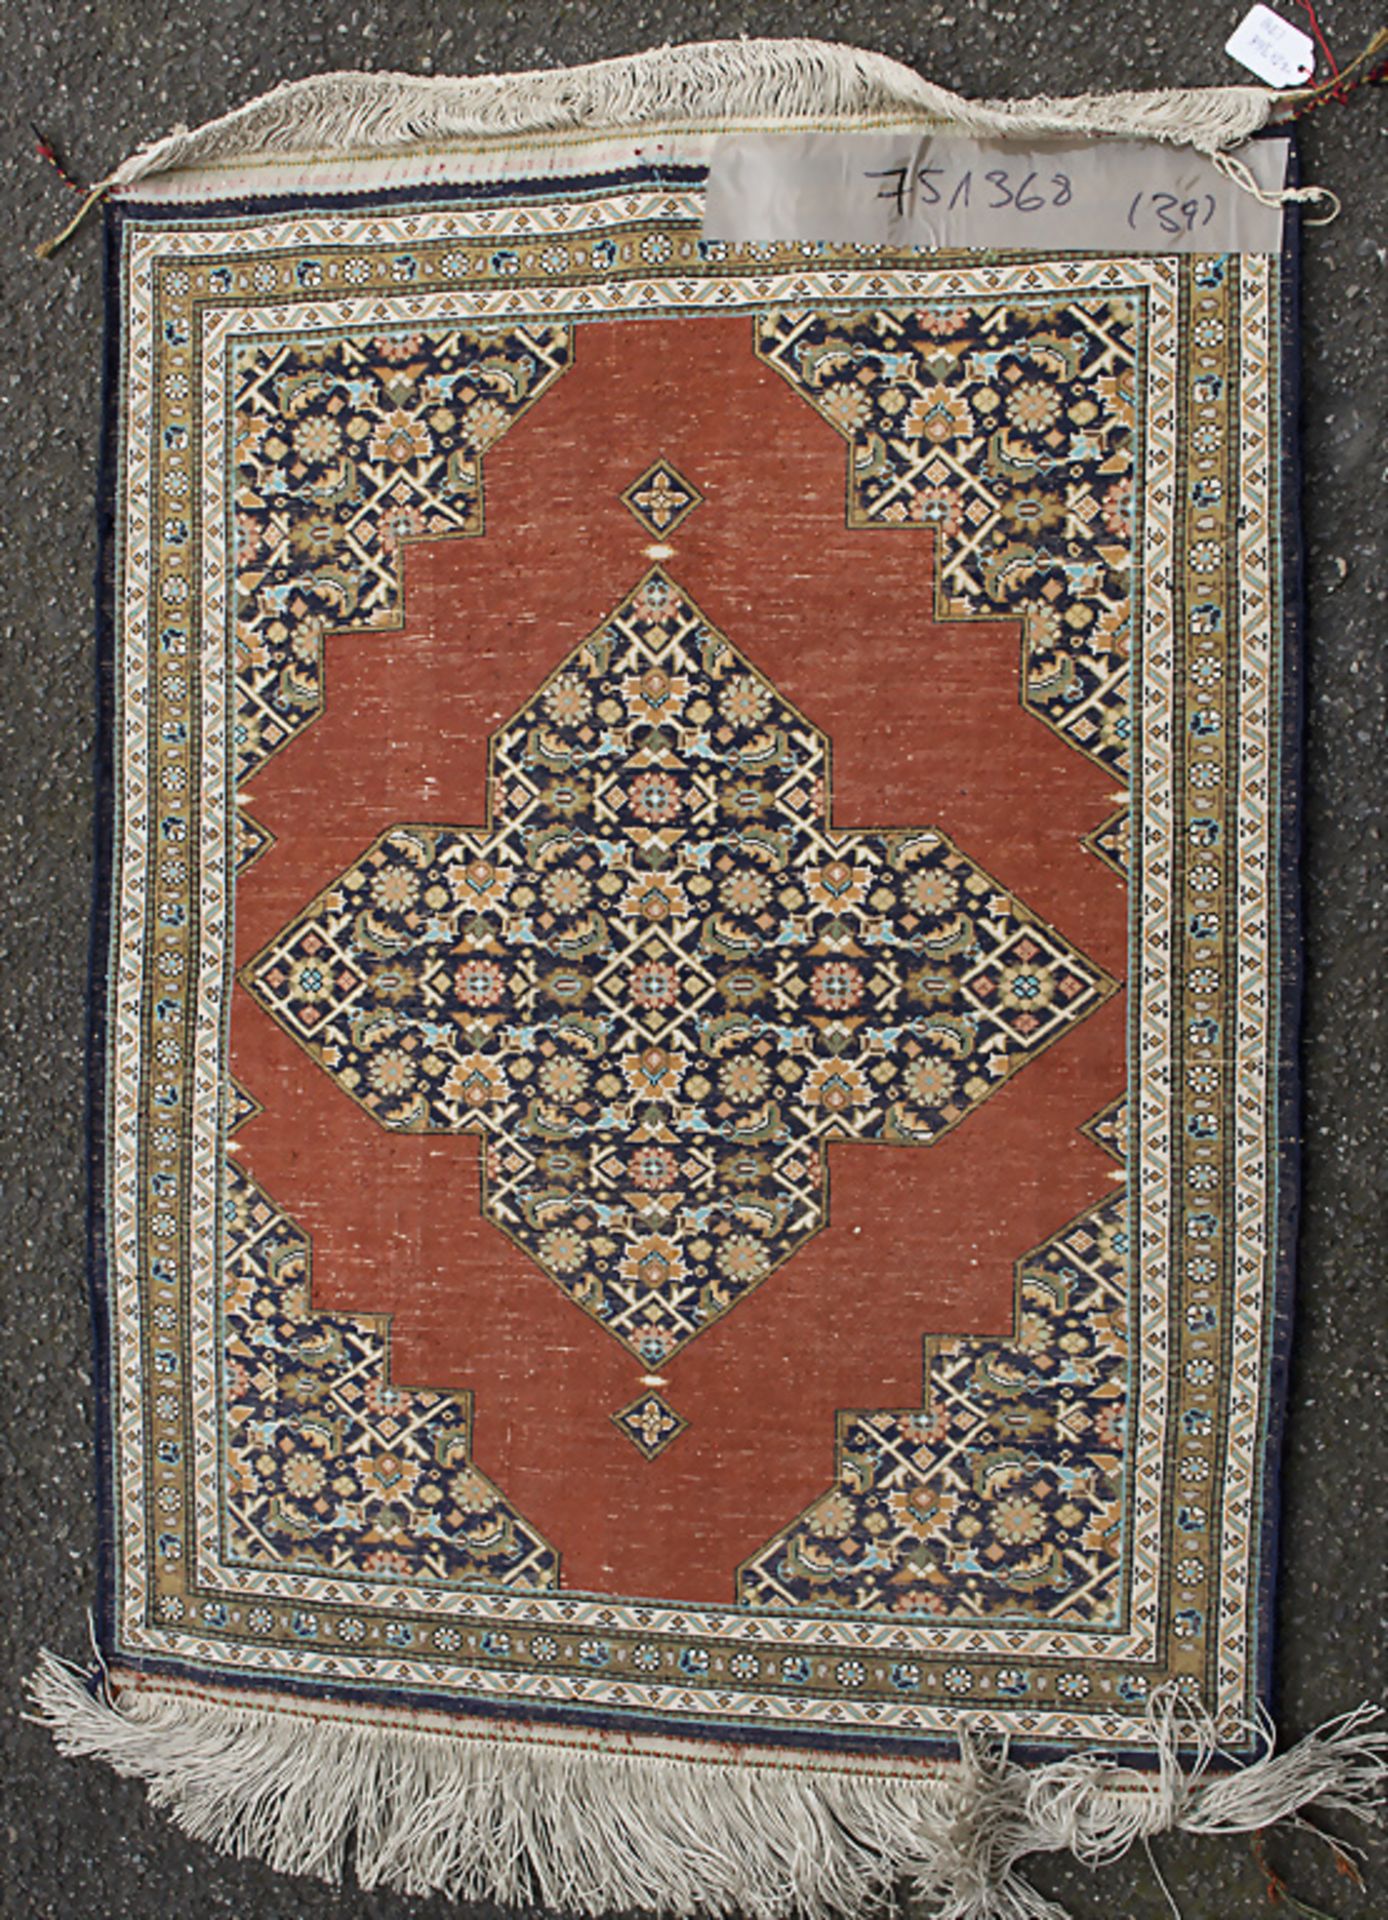 Seidenwandteppich / A silk wall carpet - Image 3 of 3